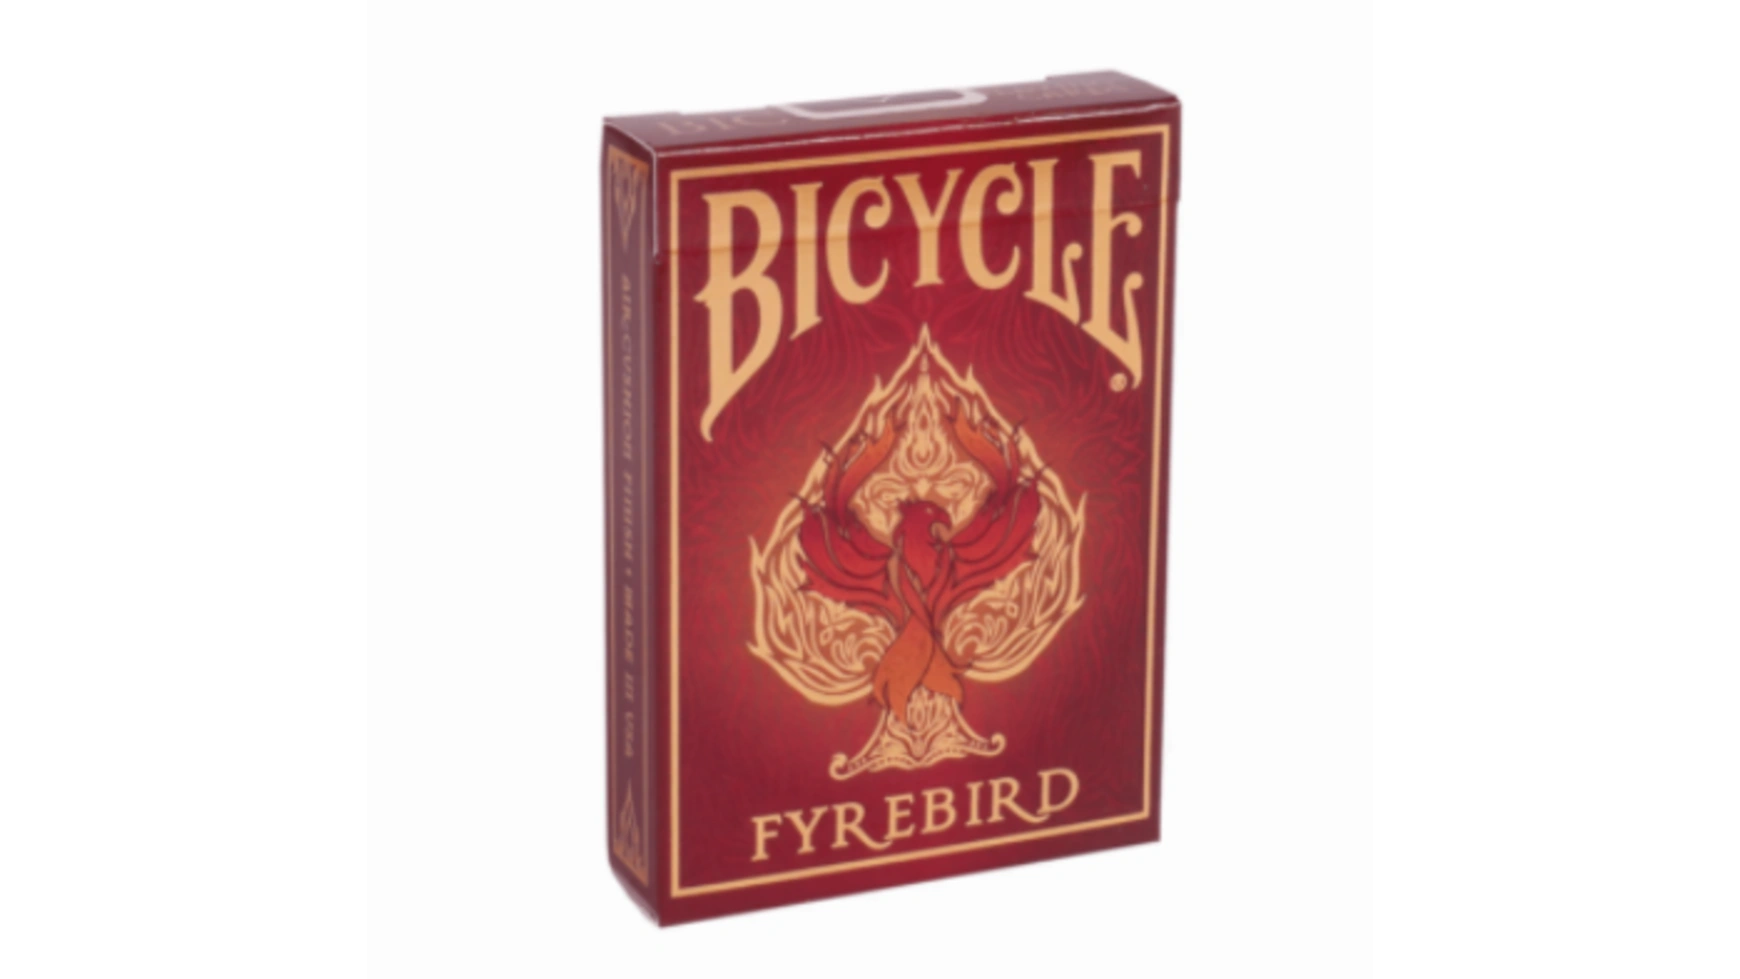 Bicycle игральные карты Fyrebird игральные карты bicycle dark mode темный режим